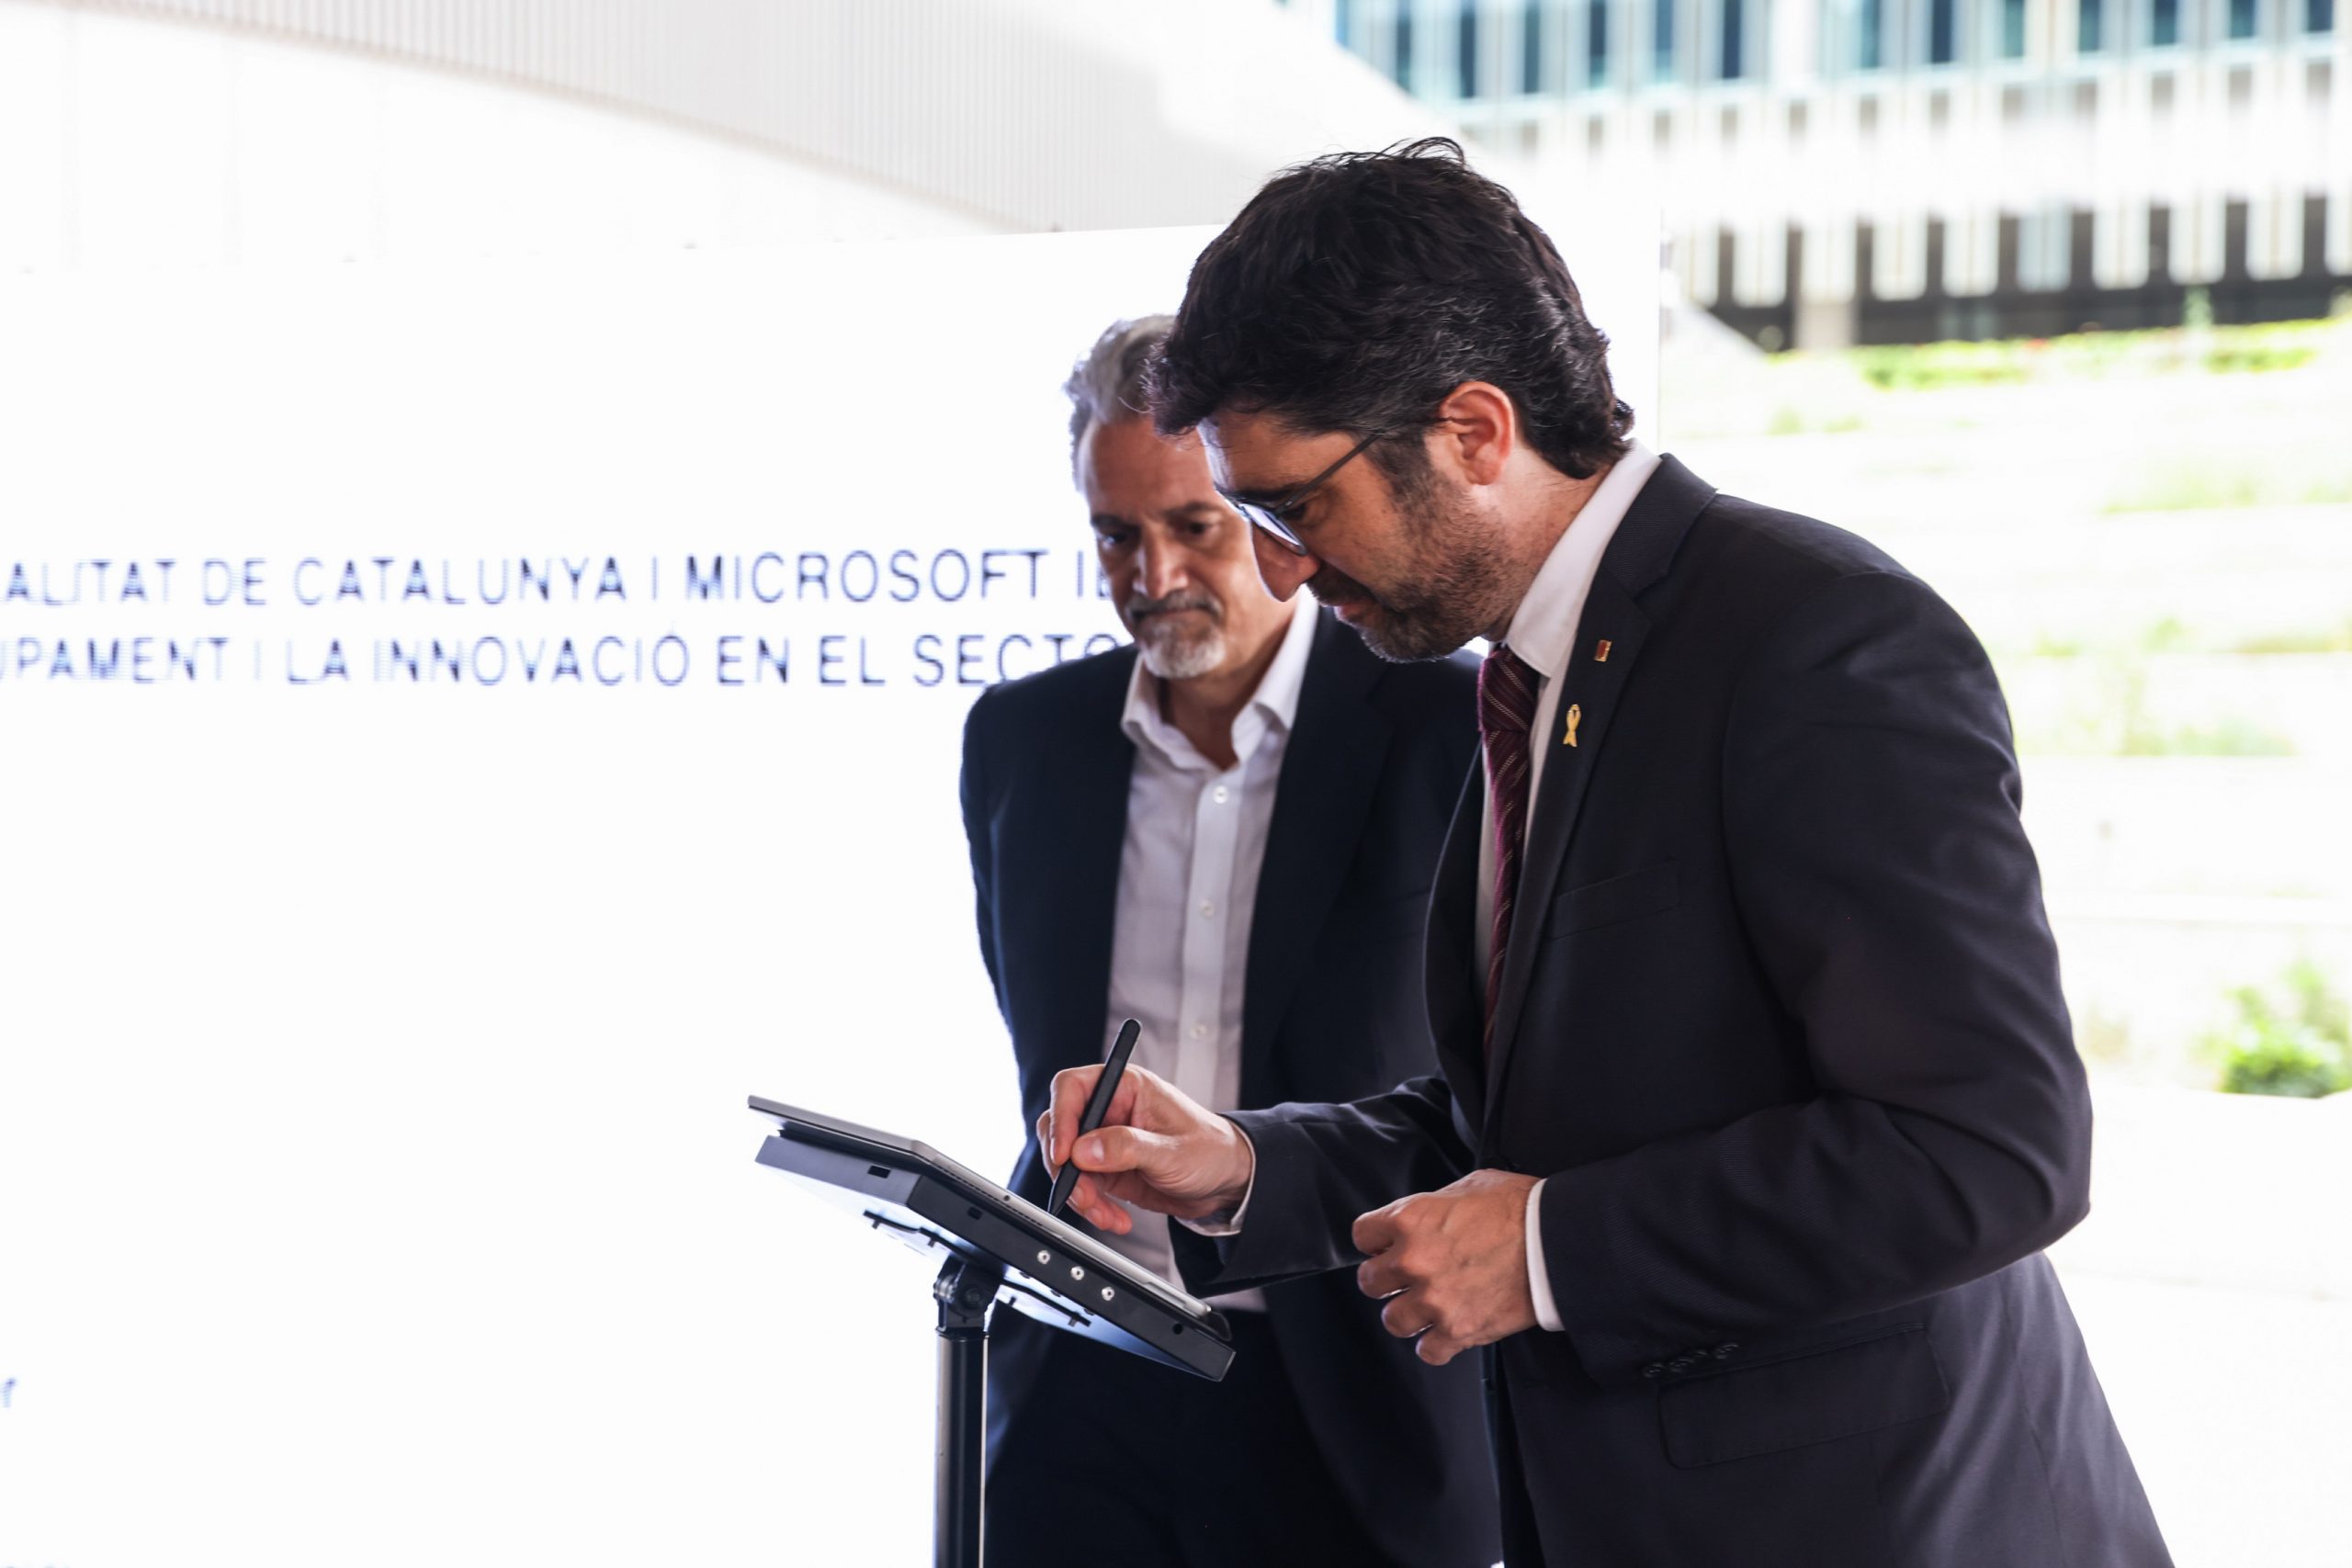 Acto de firma alianza Generalitat de Catalunya y Microsoft